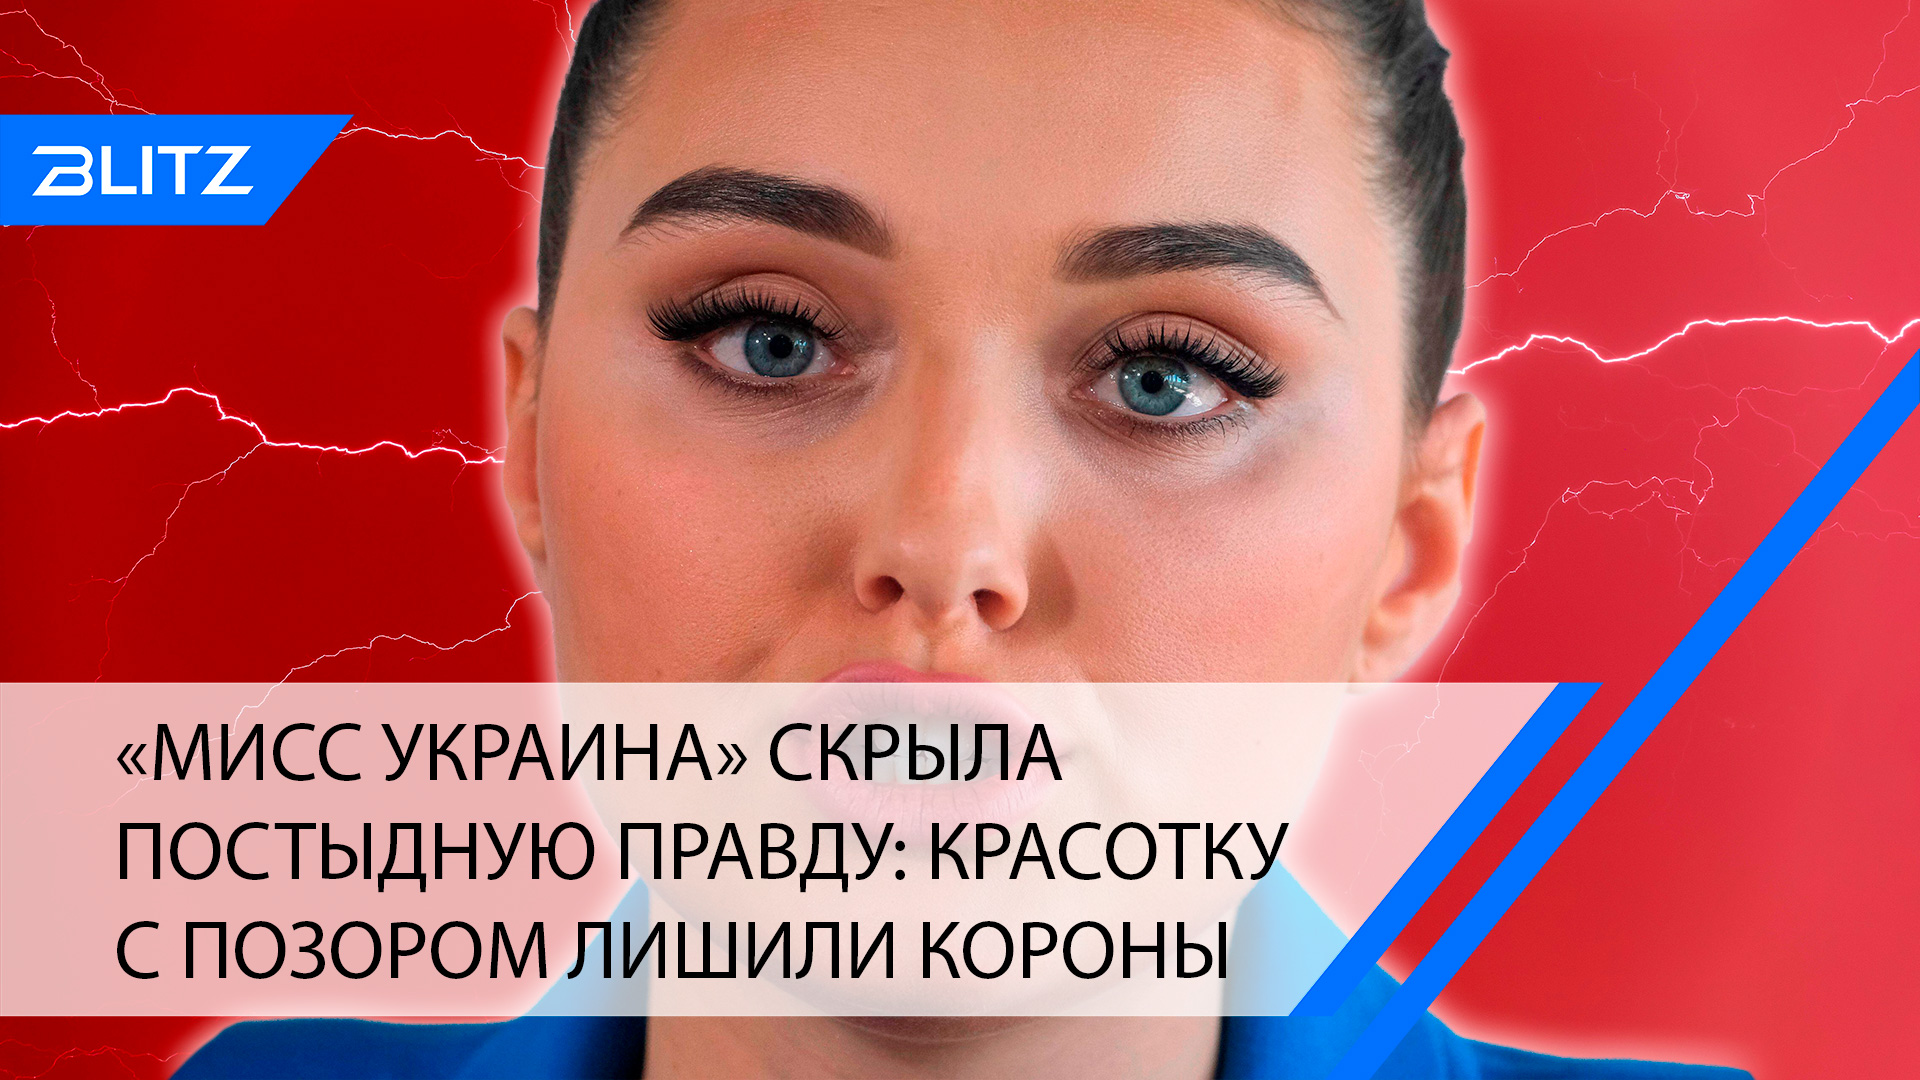 «Мисс Украина» скрыла постыдную правду: красотку с позором лишили короны